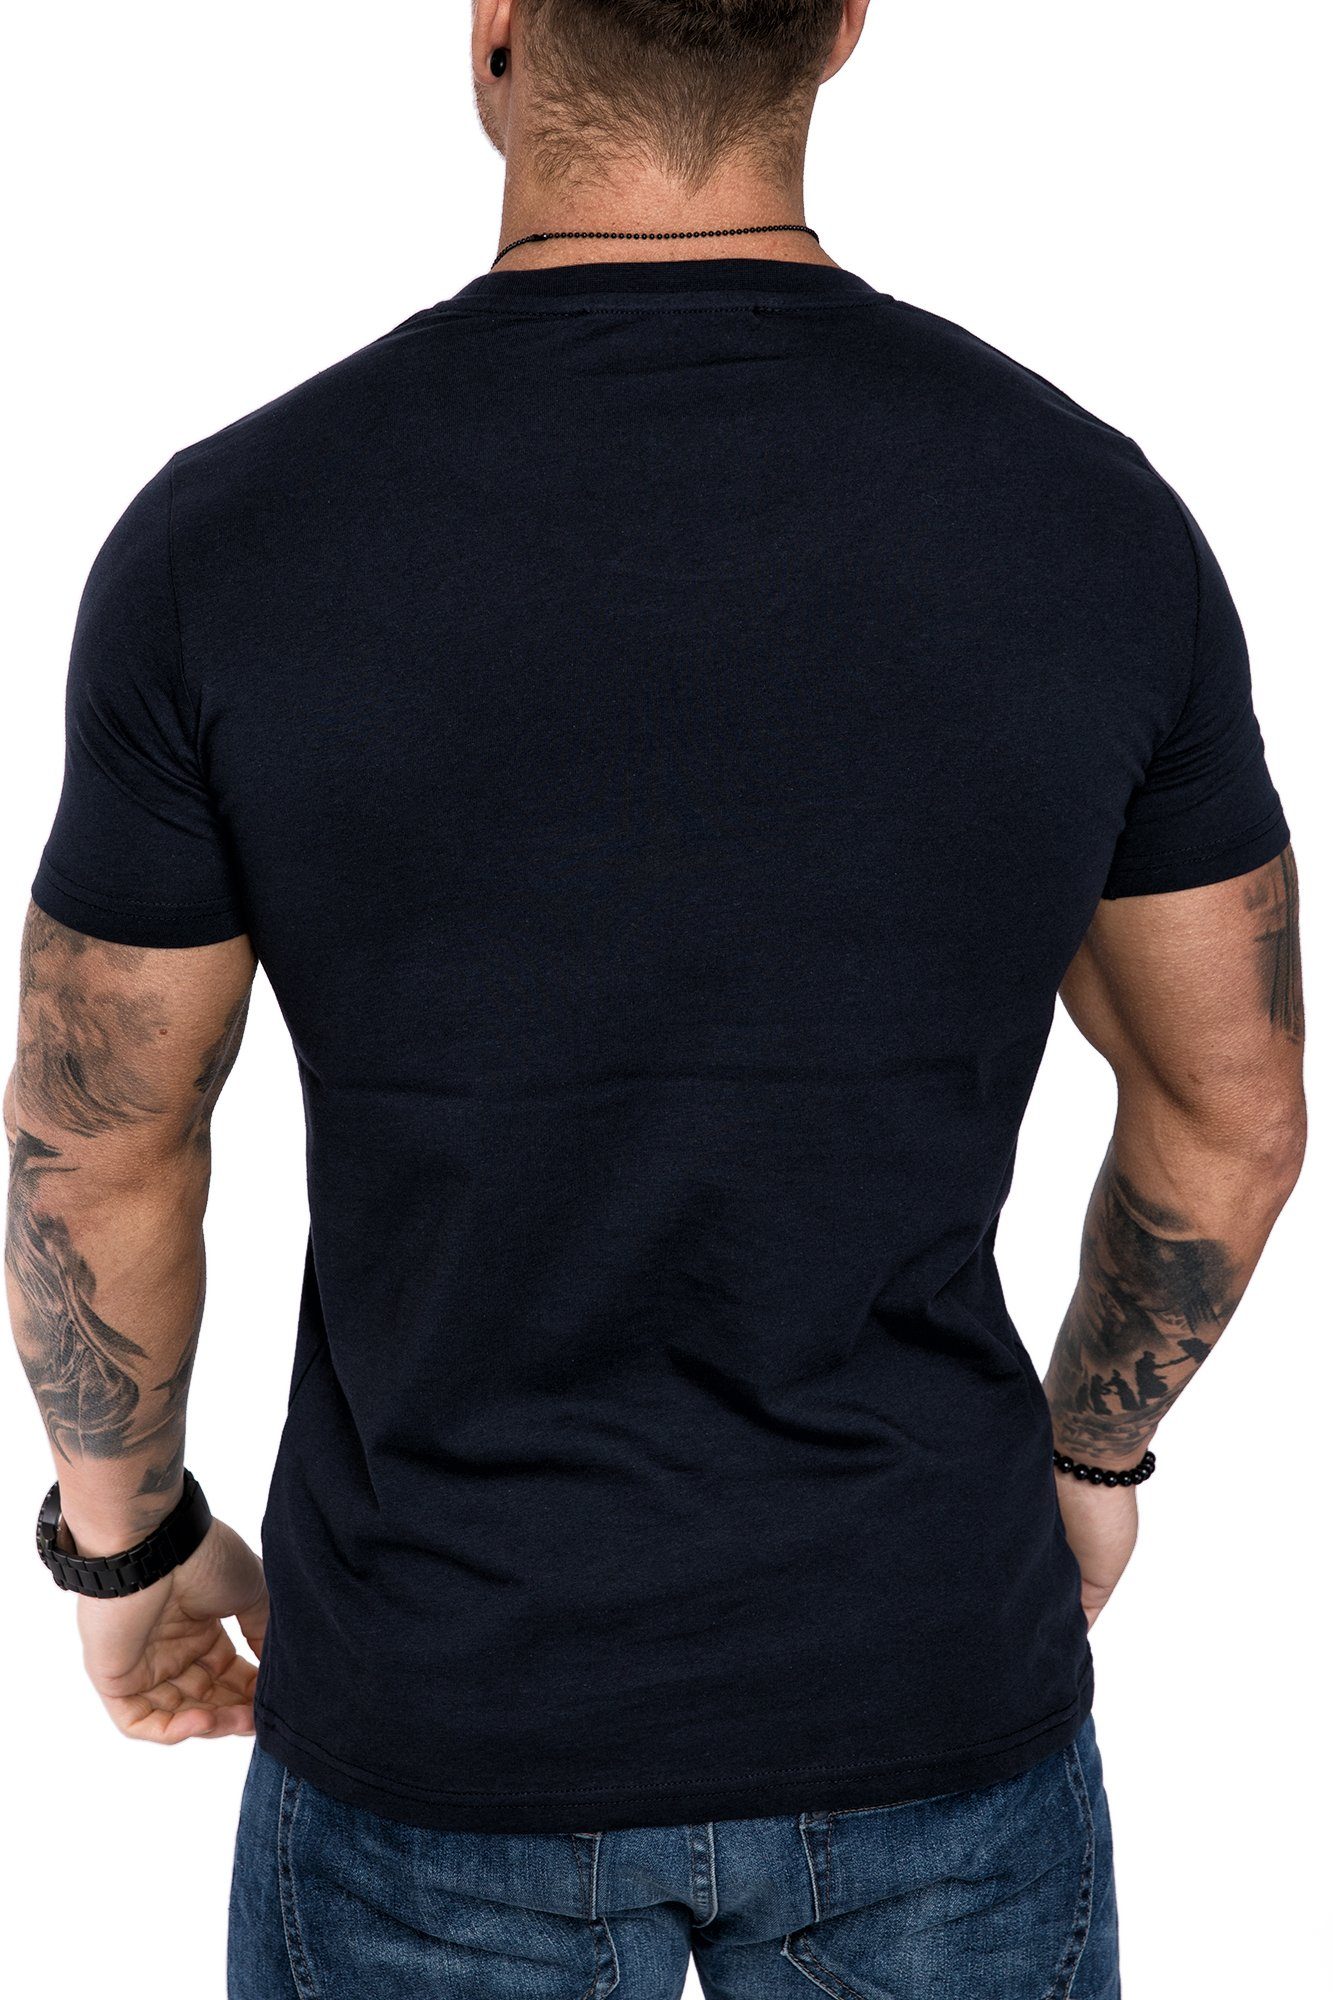 Einfarbig Navyblau Amaci&Sons Shirt Vintage mit Rundhalsausschnitt Basic T-Shirt Neck Crew Herren T-Shirt Rundhalsausschnitt LANCASTER Basic